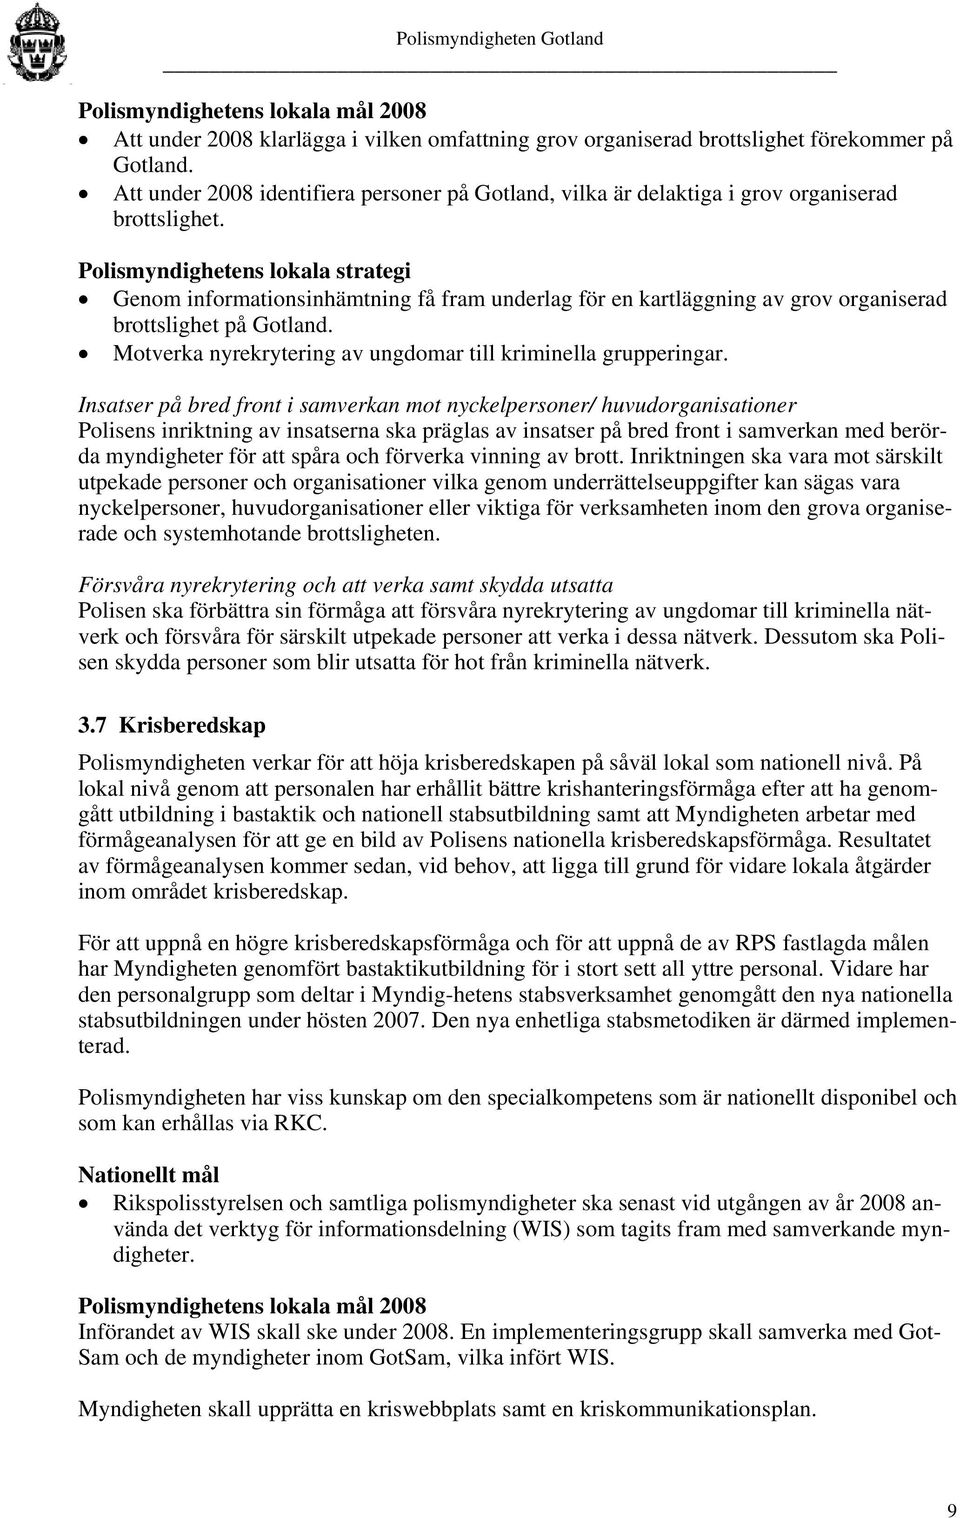 Polismyndighetens lokala strategi Genom informationsinhämtning få fram underlag för en kartläggning av grov organiserad brottslighet på Gotland.